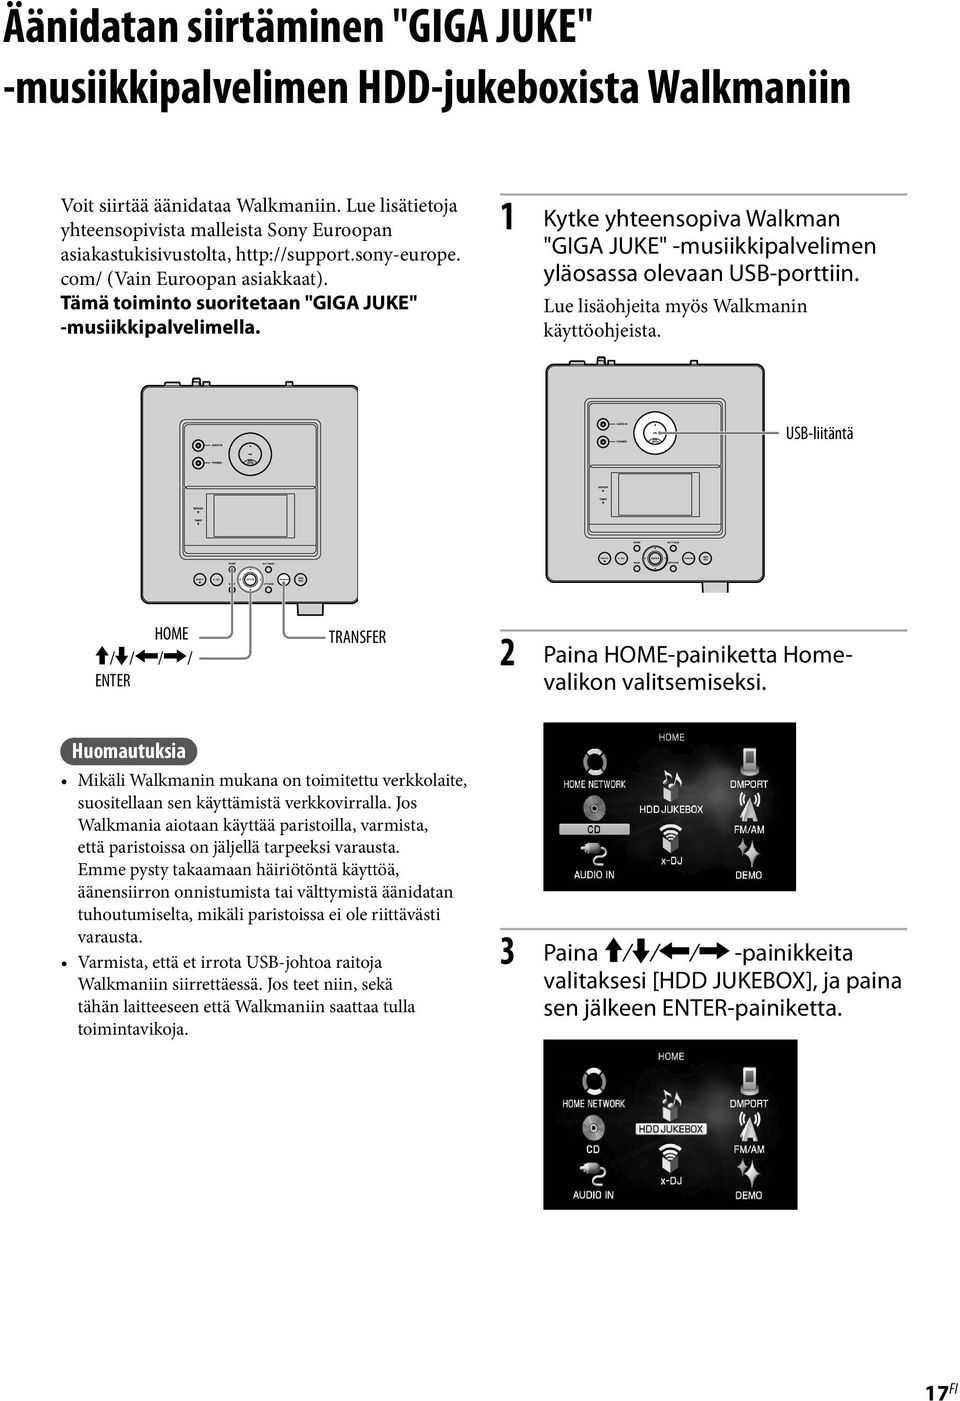 1 Kytke yhteensopiva Walkman "GIGA JUKE" -musiikkipalvelimen yläosassa olevaan USB-porttiin. Lue lisäohjeita myös Walkmanin käyttöohjeista.